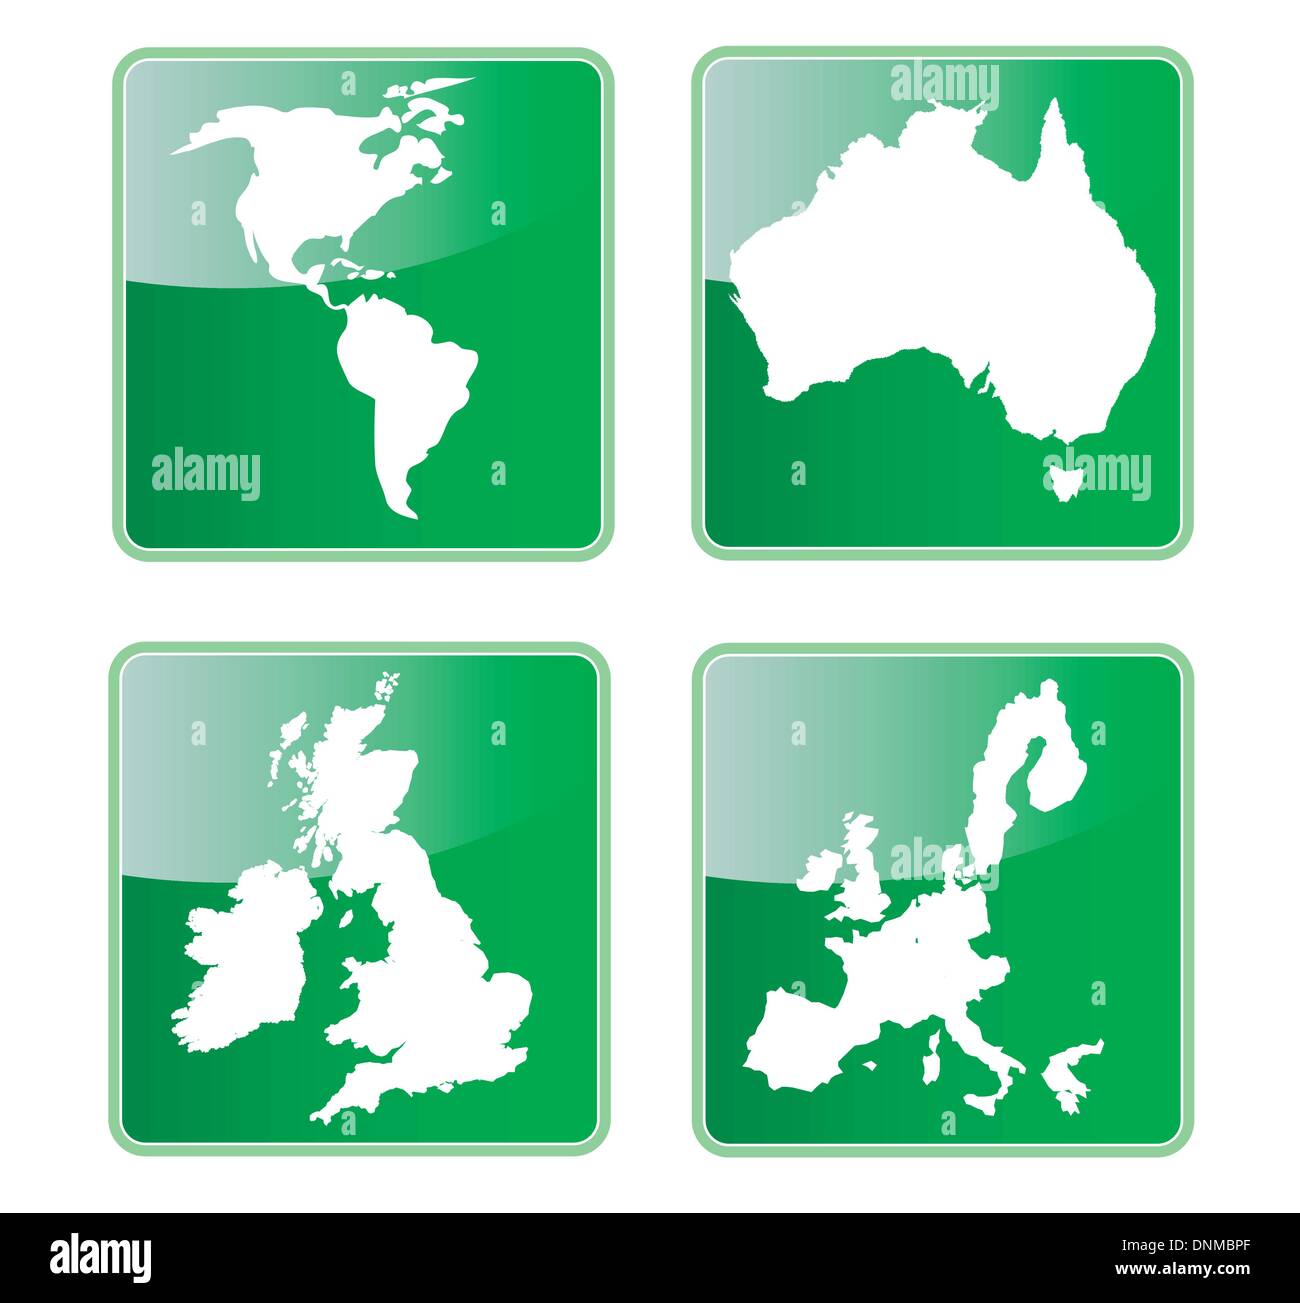 Icona che mostra la mappa del nord e sud America e Australia gran bretagna isole britanniche e Unione europea. Illustrazione Vettoriale